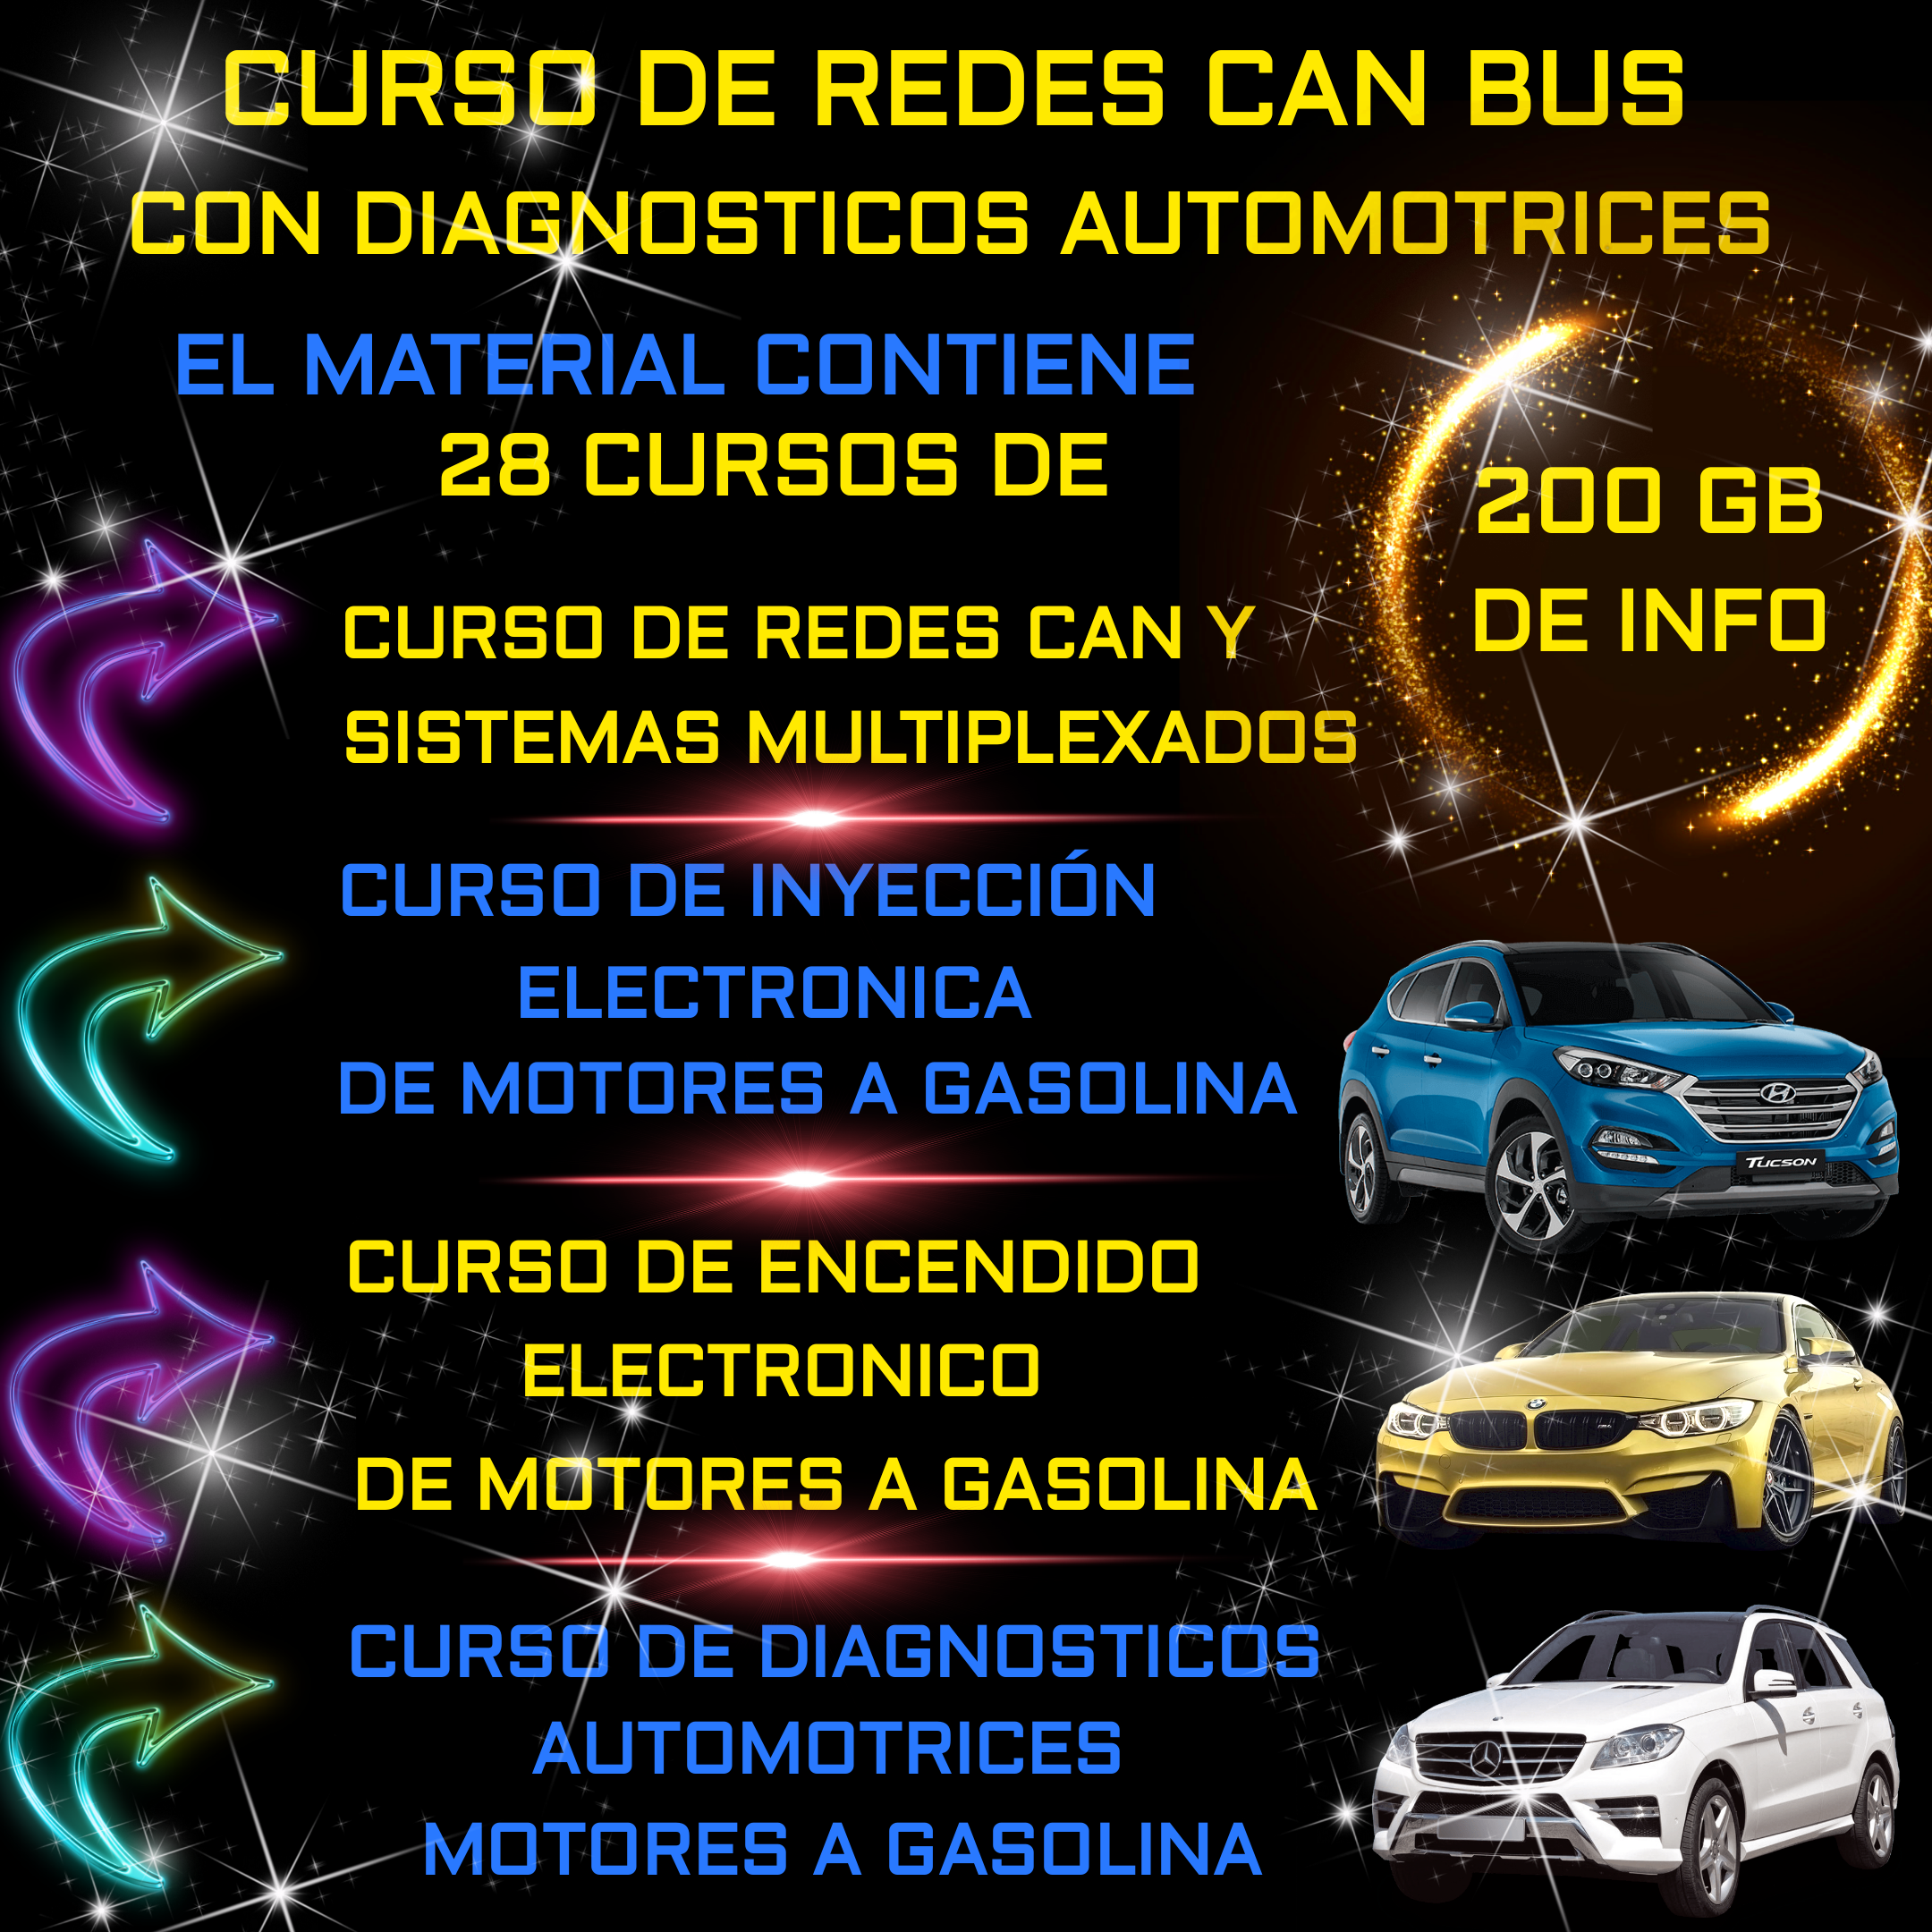 CURSOS DE REDES CAN BUS CON DIAGNÓSTICOS AUTOMOTRICES